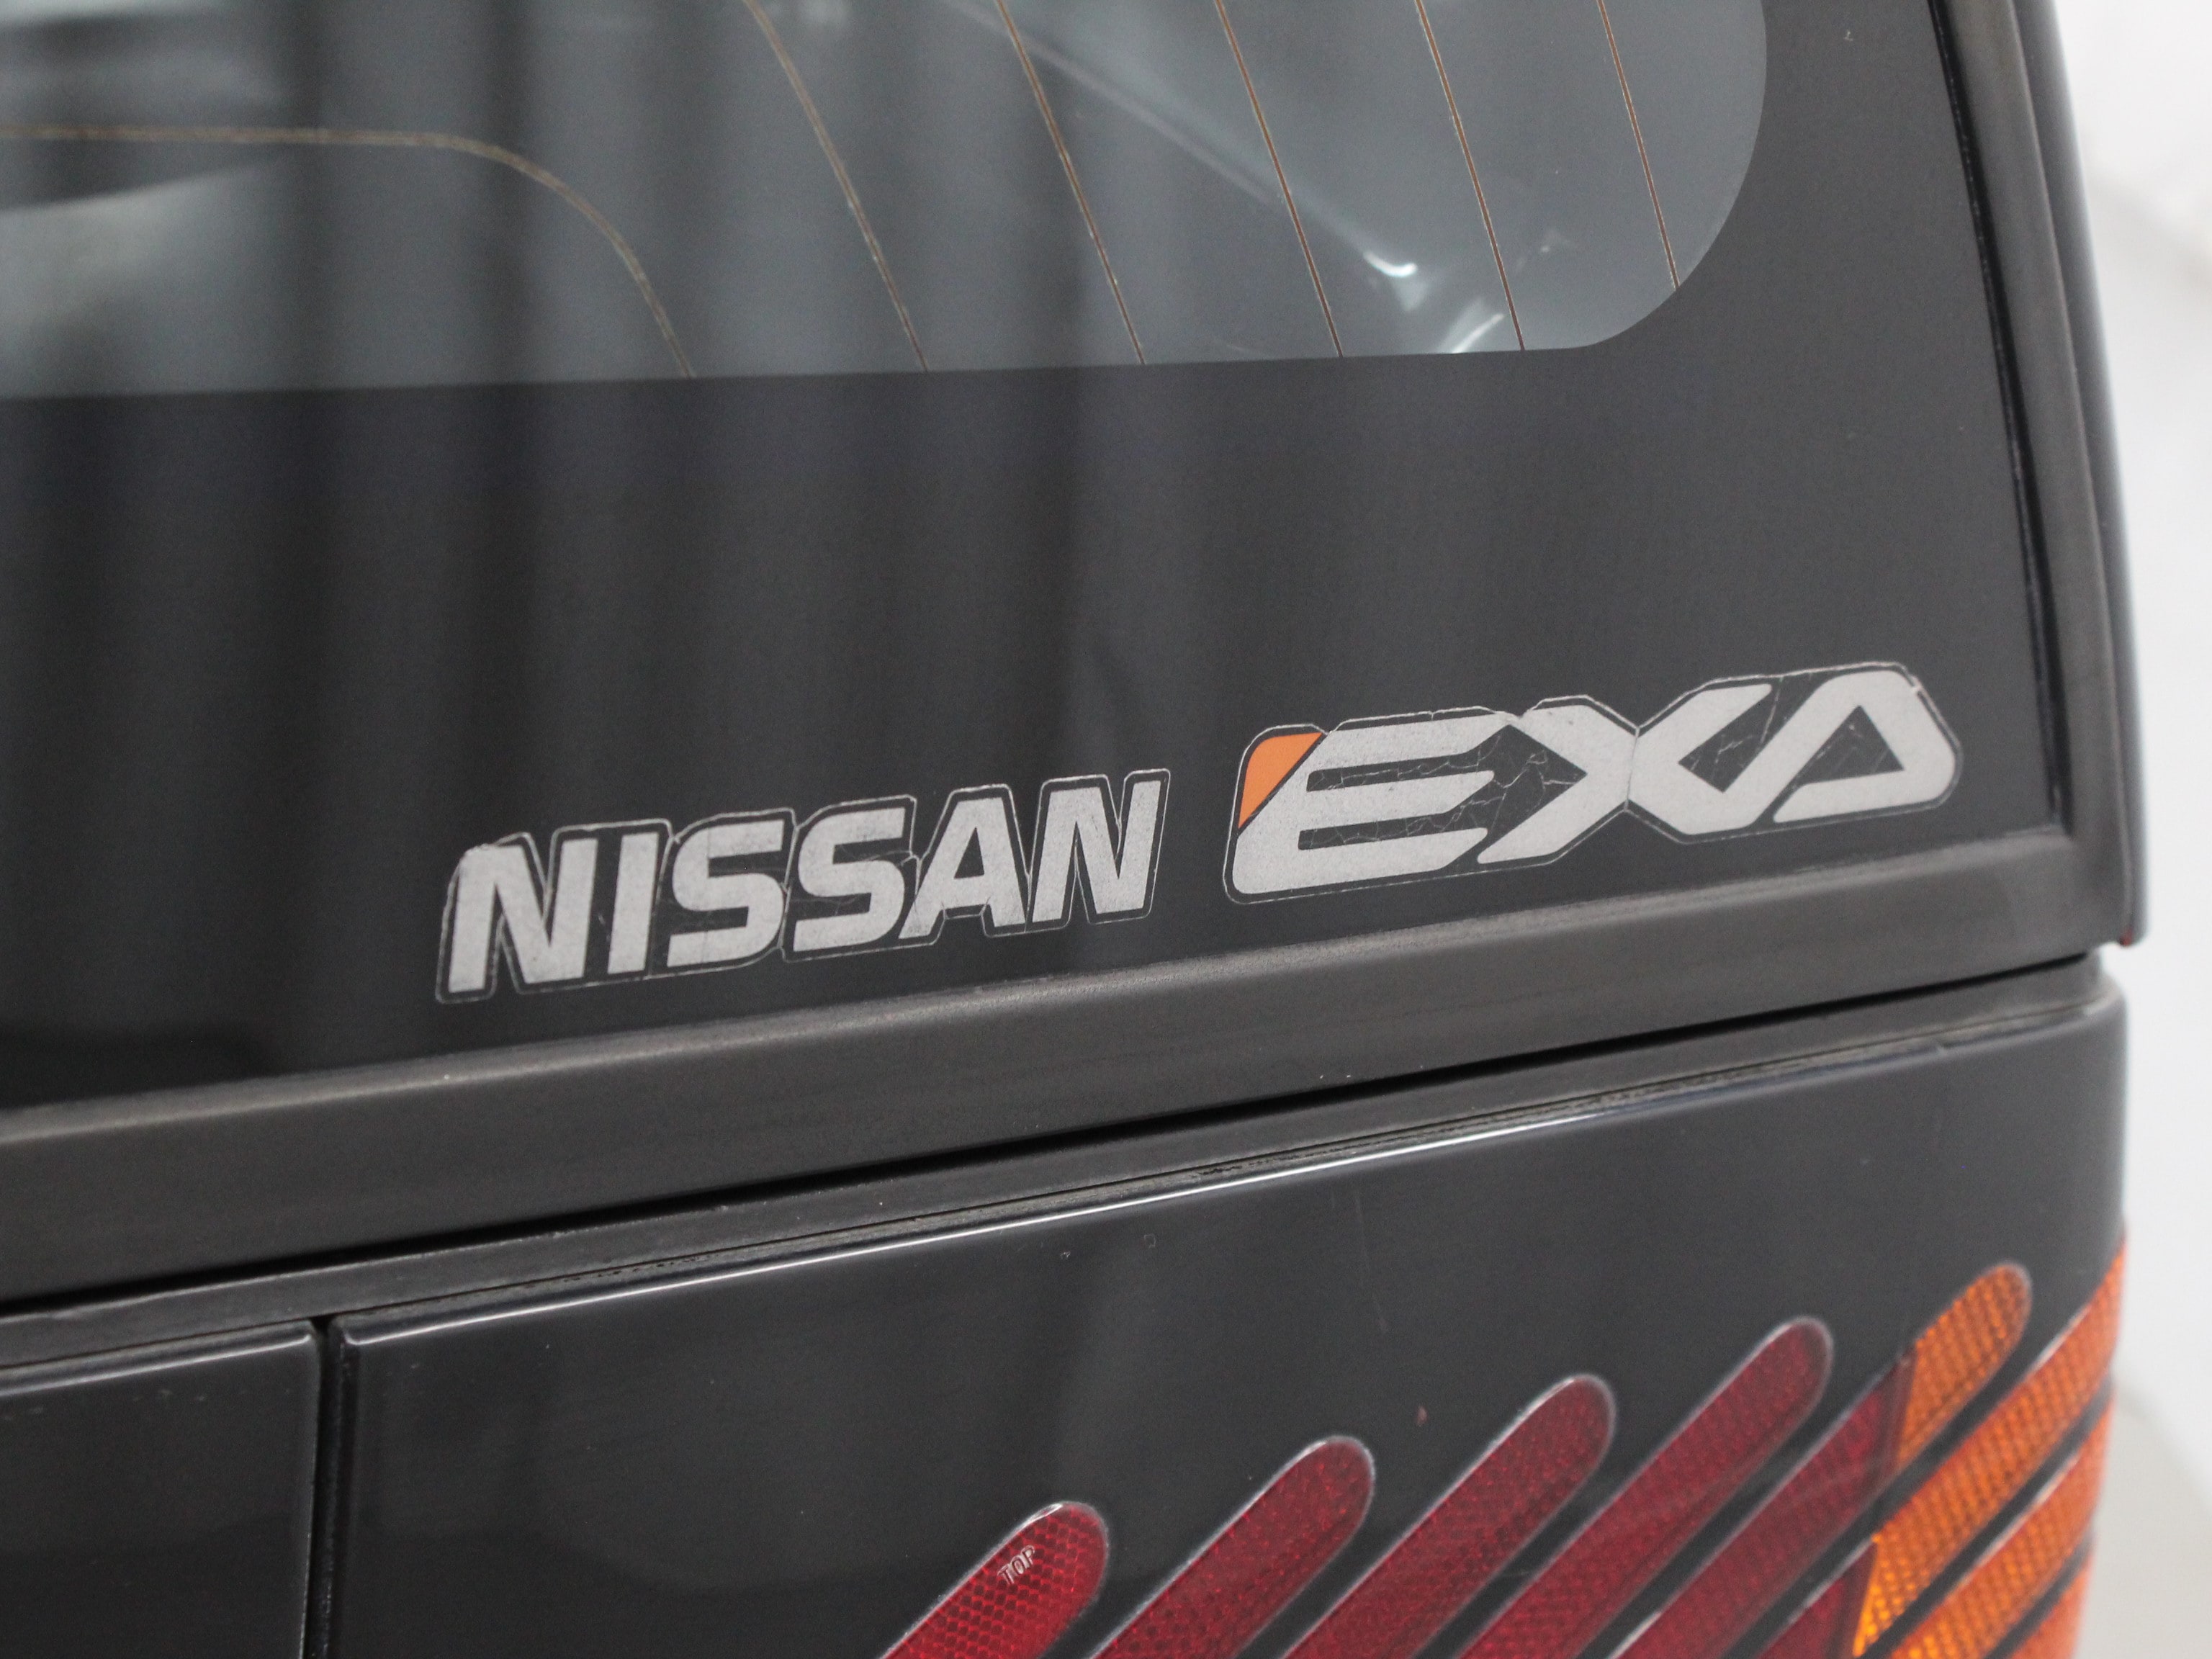 1988 Nissan EXA 52